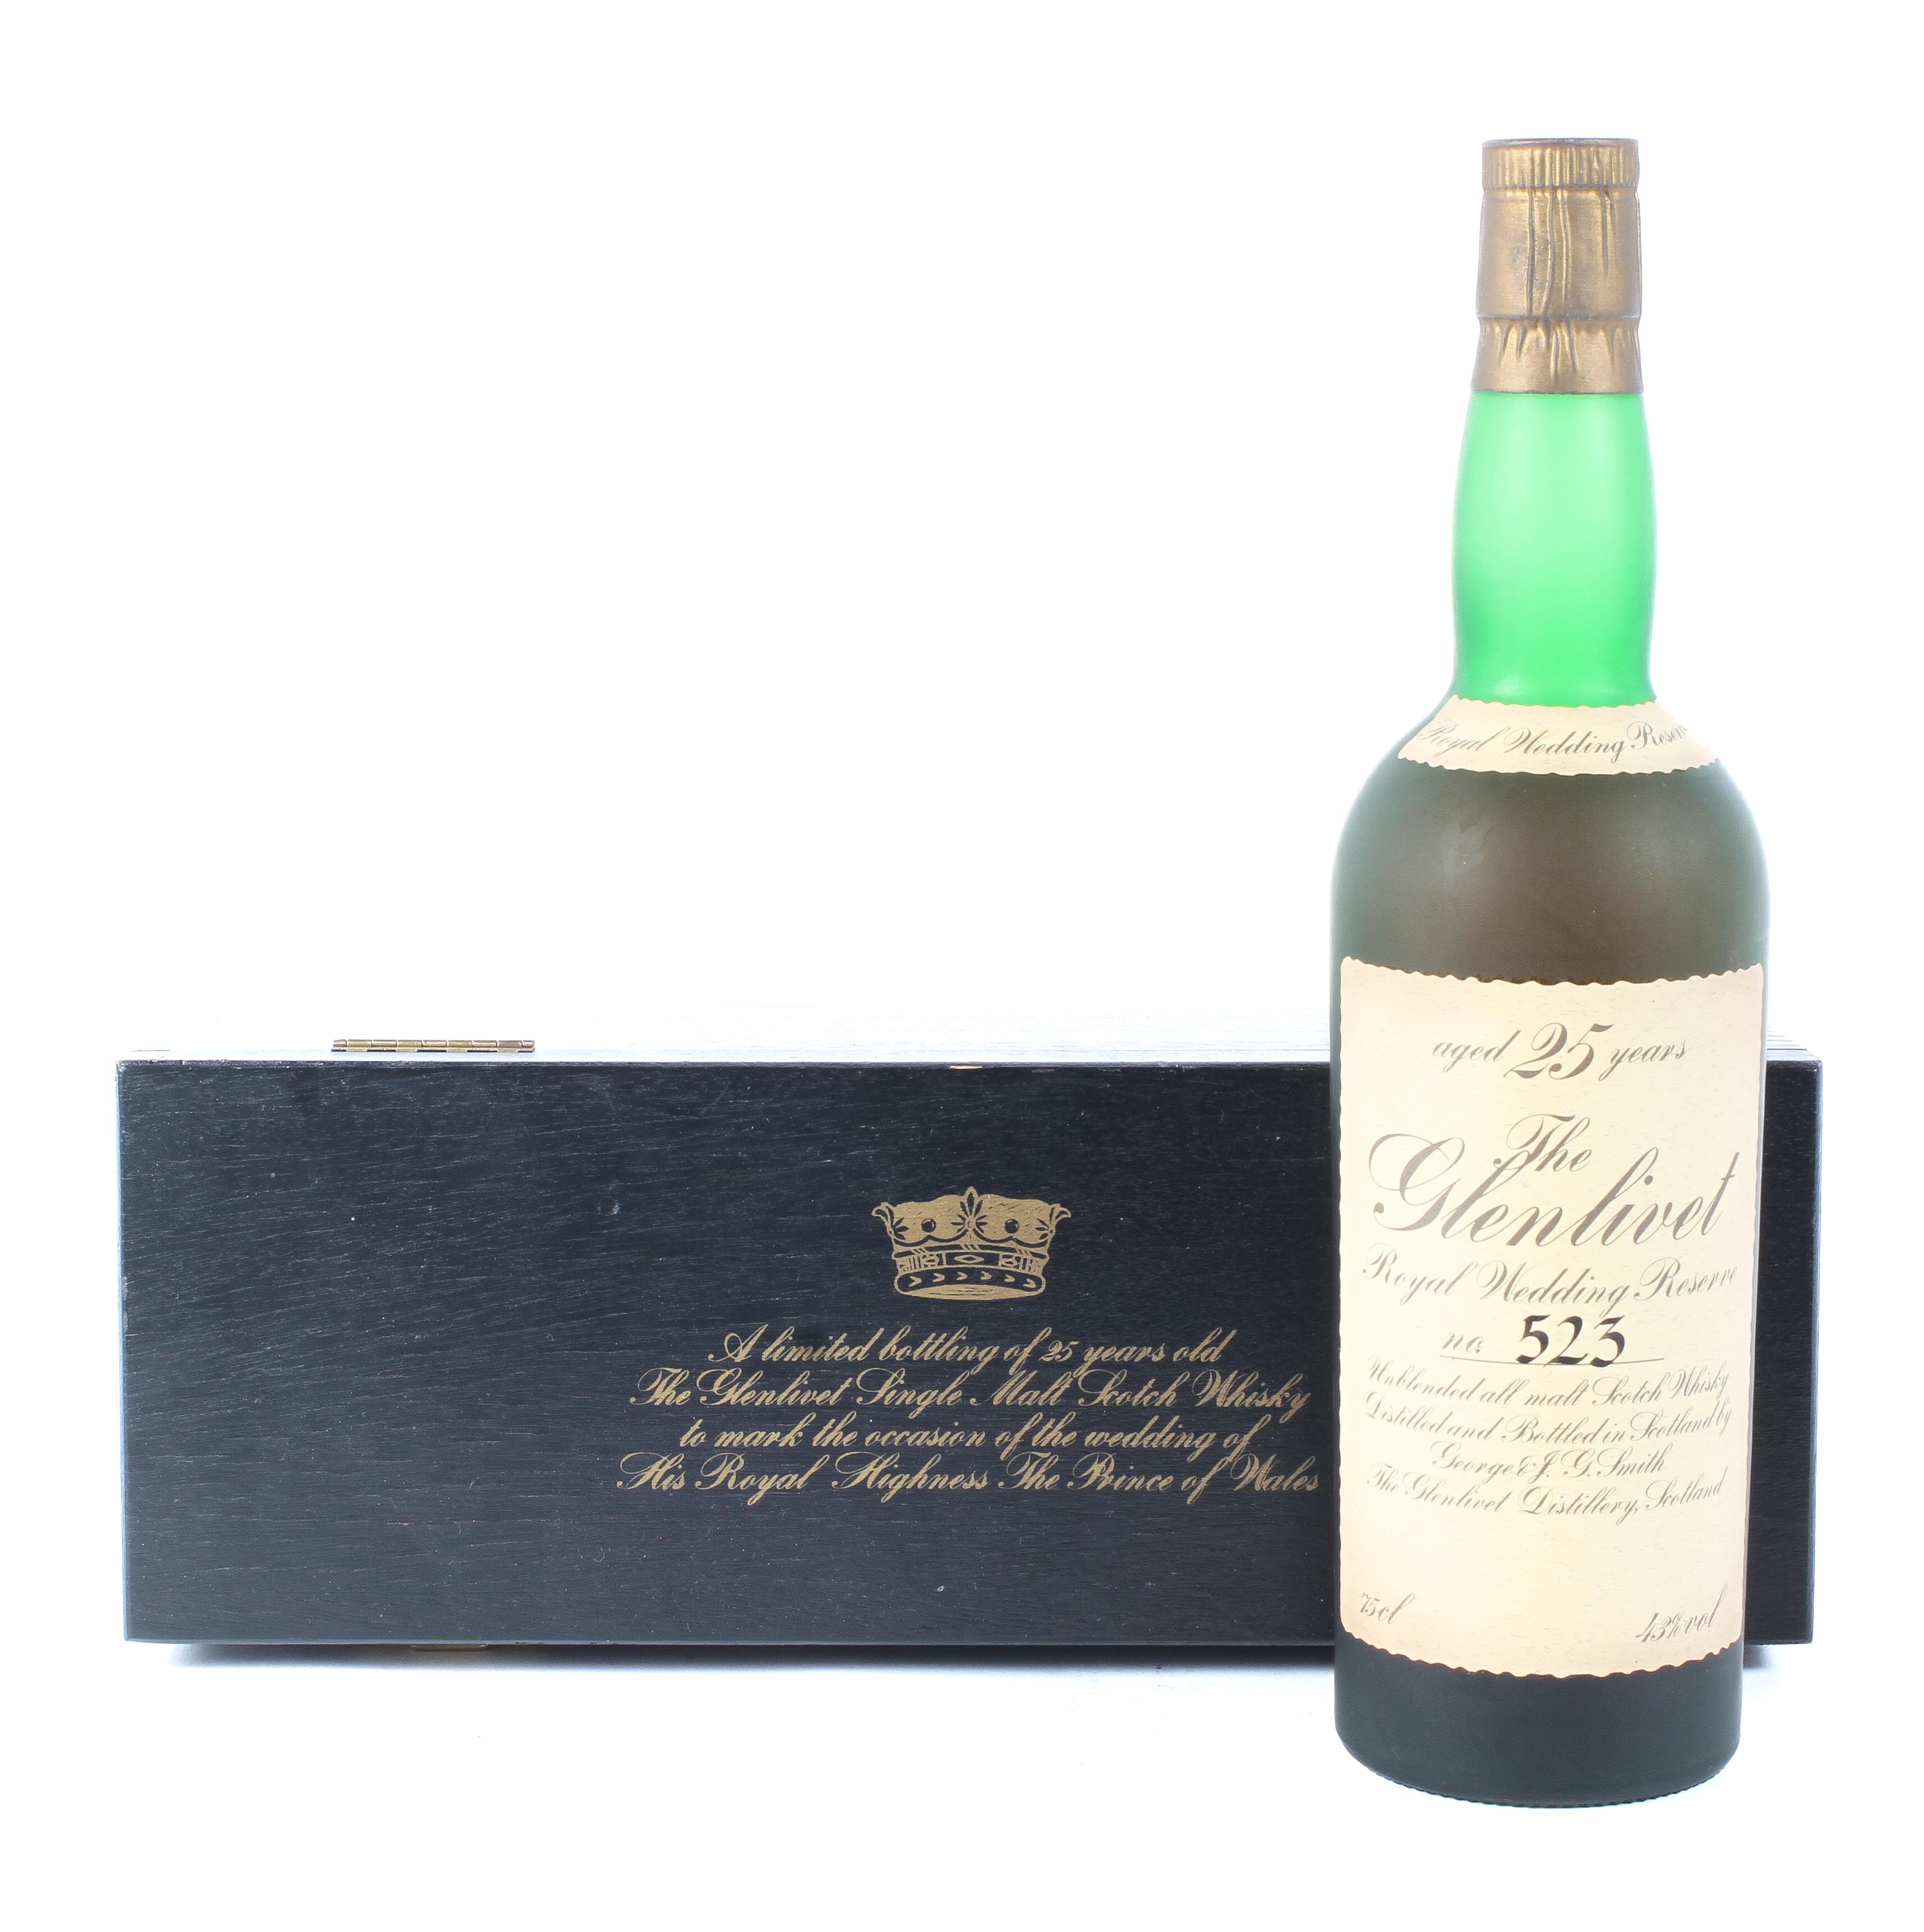 A bottle of The Glenlivet 25 year old Royal Wedding reserve unblended all malt Scotch whisky, - Image 3 of 9